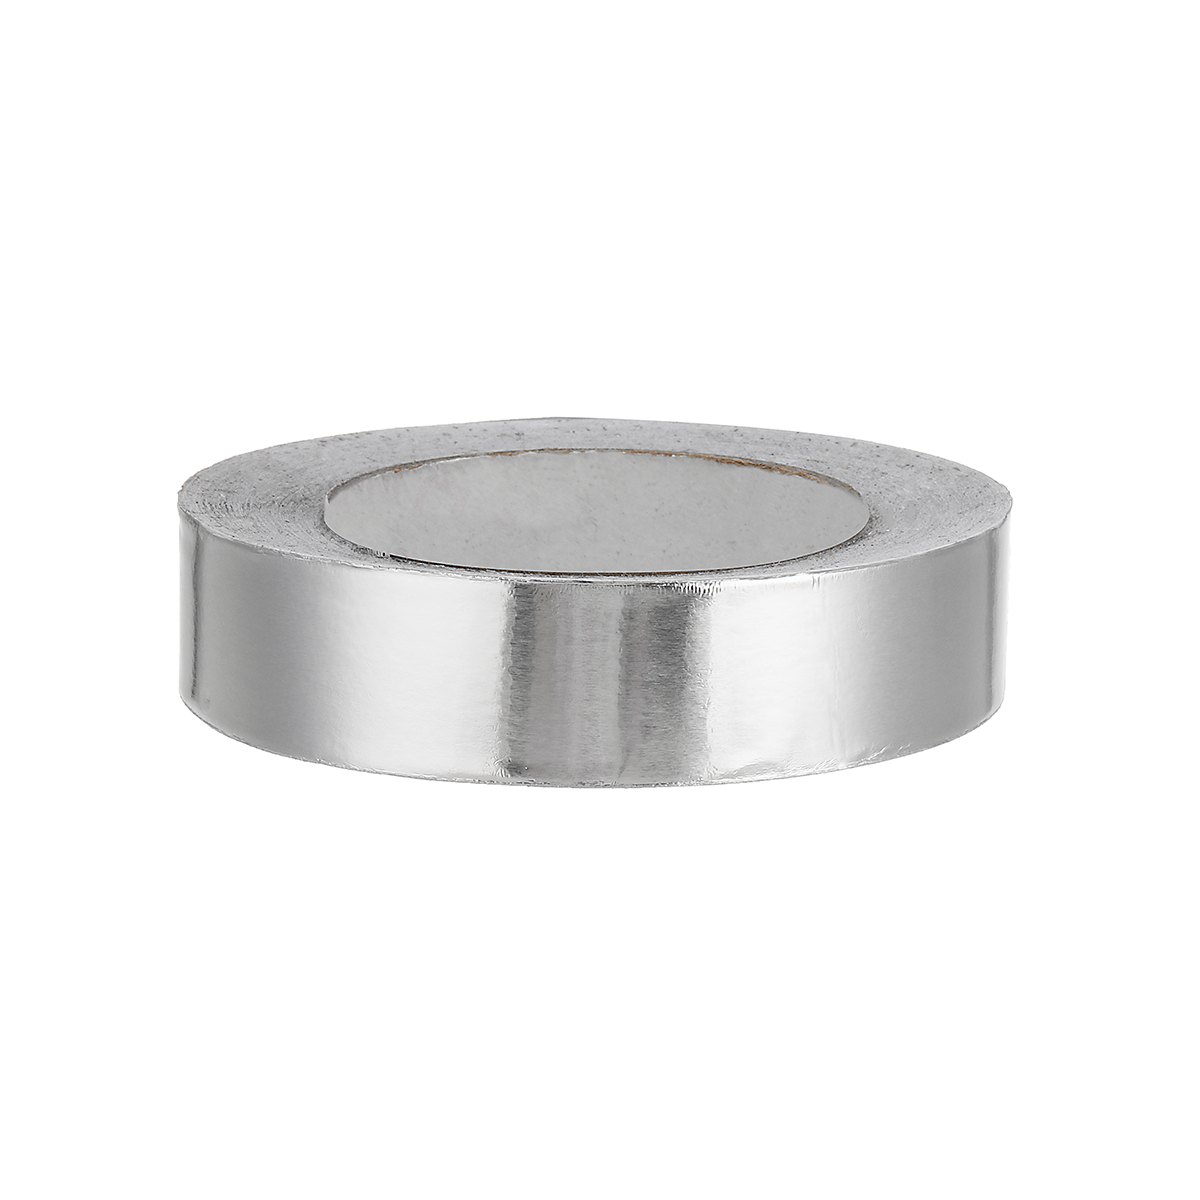 5cmx20m-Adhesive-Car-Aluminium-Sealing-Foil-Tape-Stripe-Resist-Duct-Repair-Tools-1288349-5